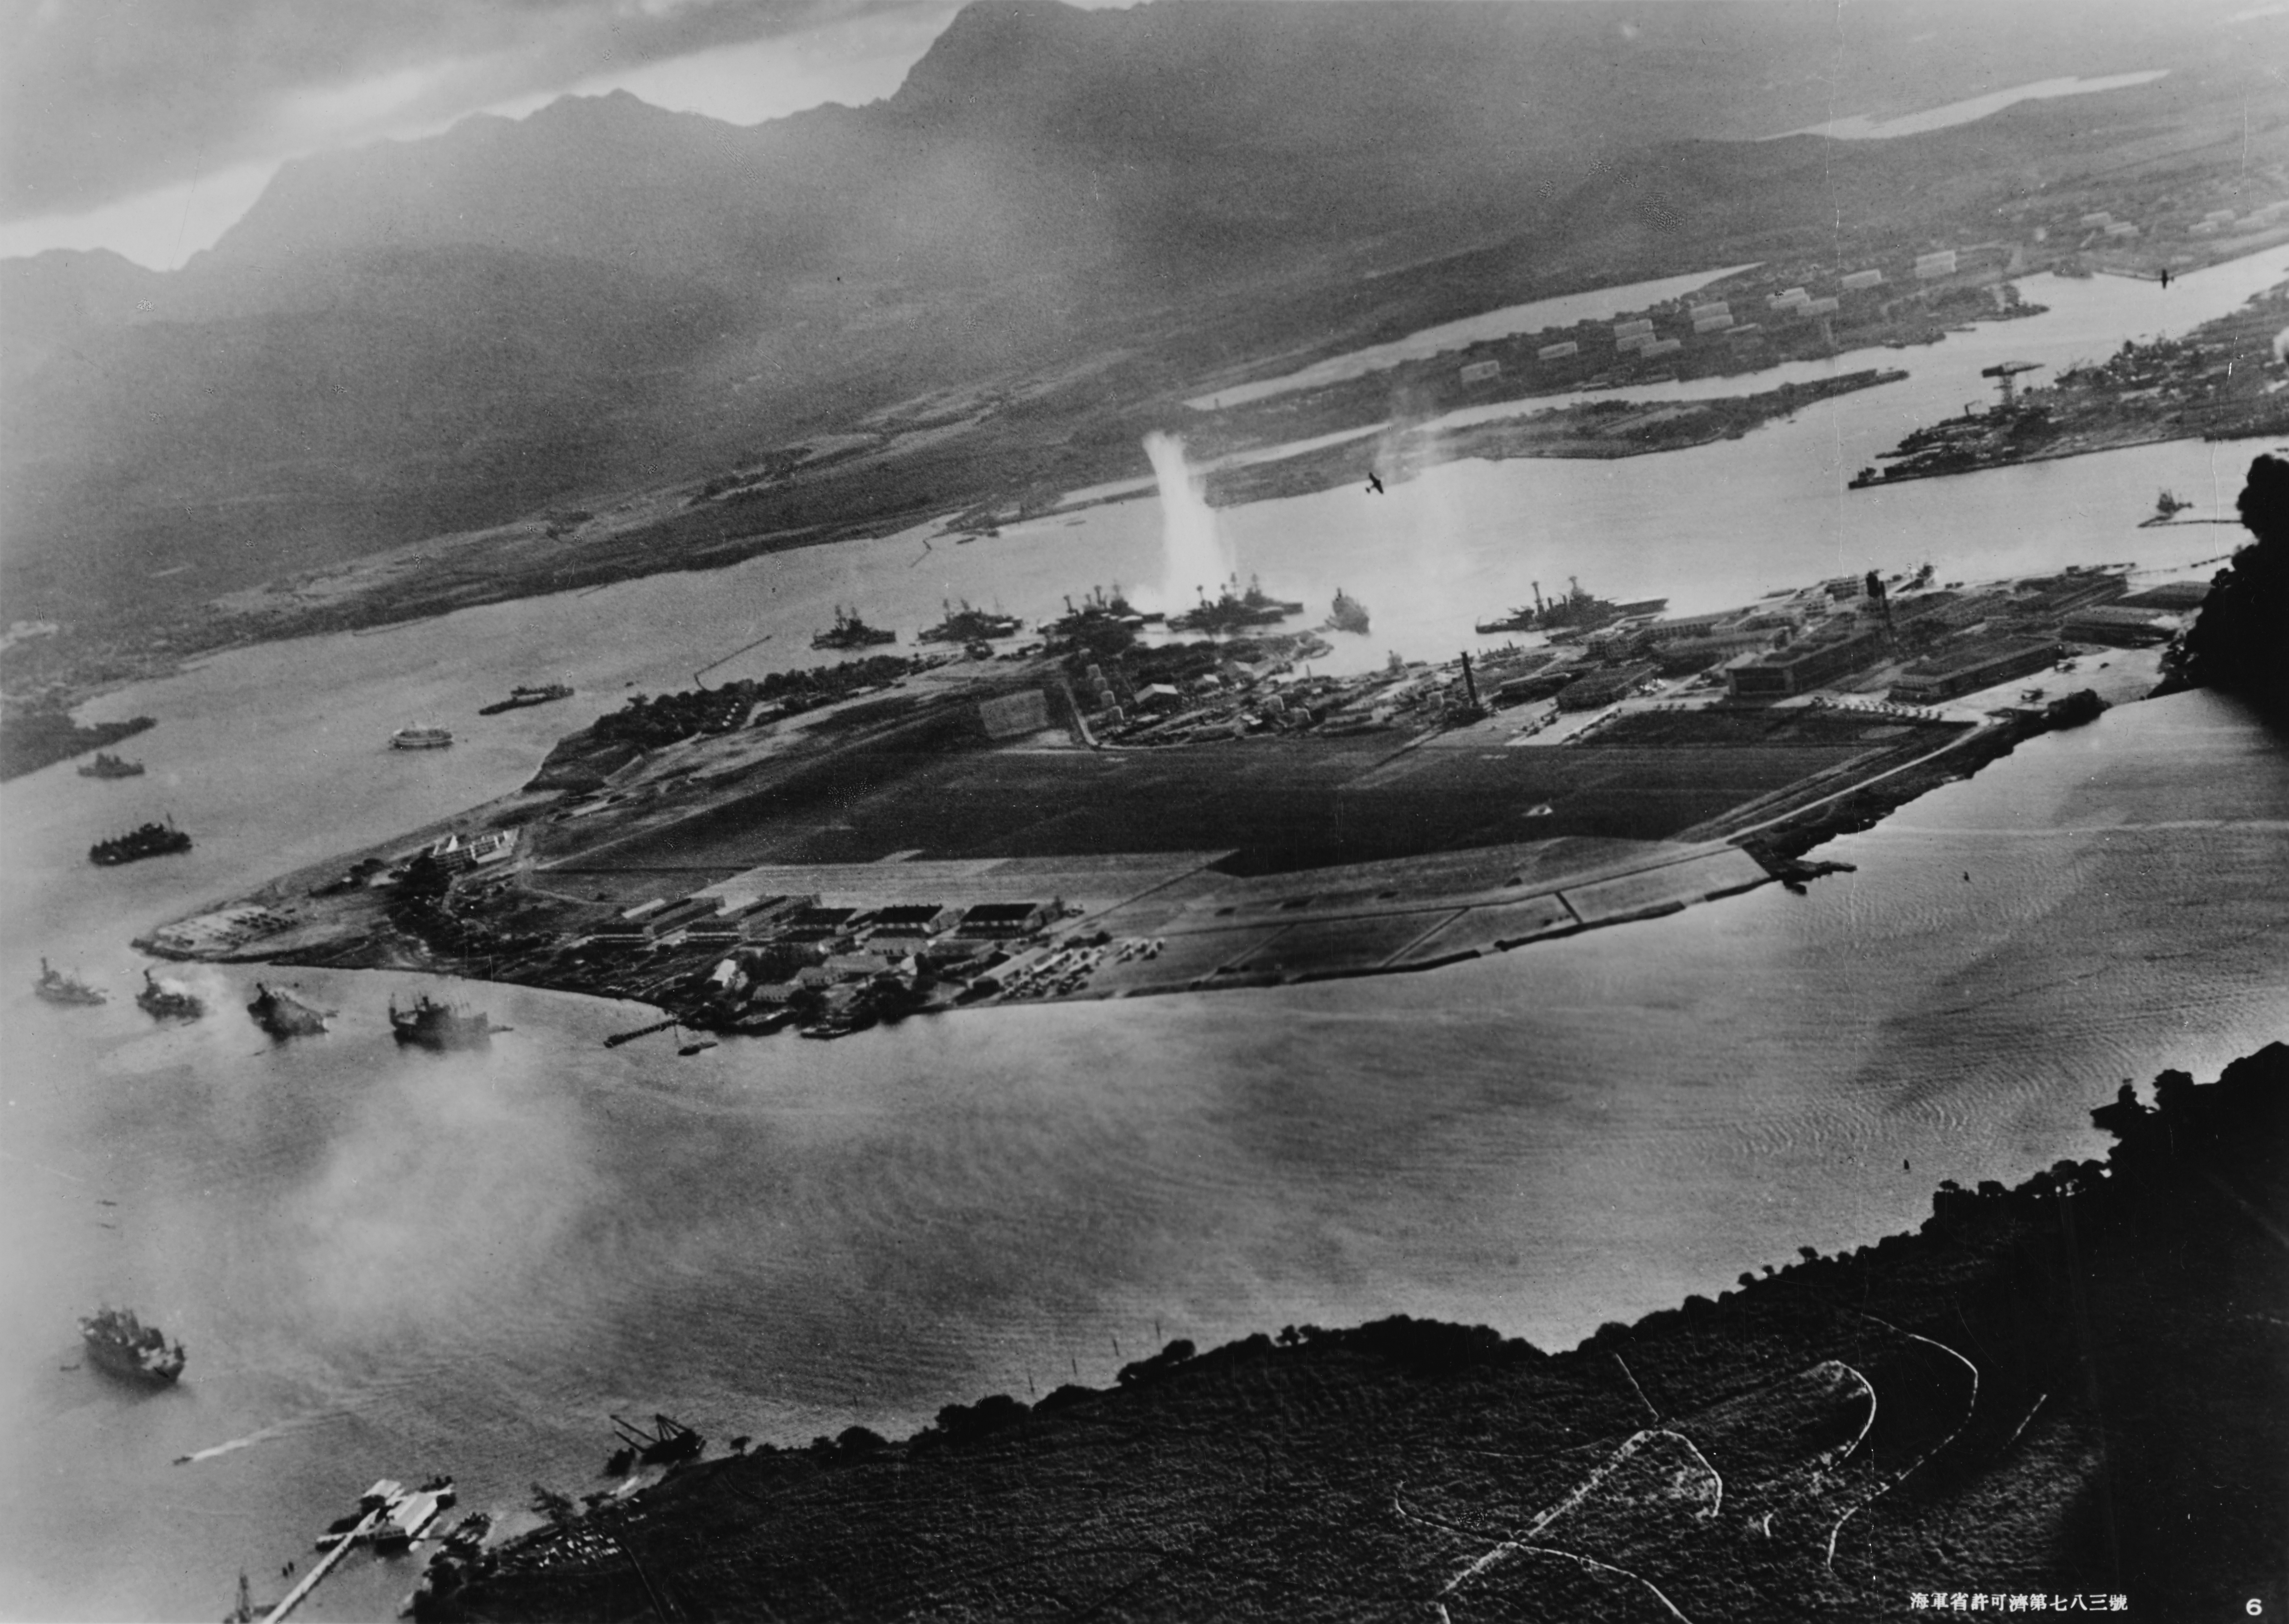 파일:external/upload.wikimedia.org/Attack_on_Pearl_Harbor_Japanese_planes_view.jpg